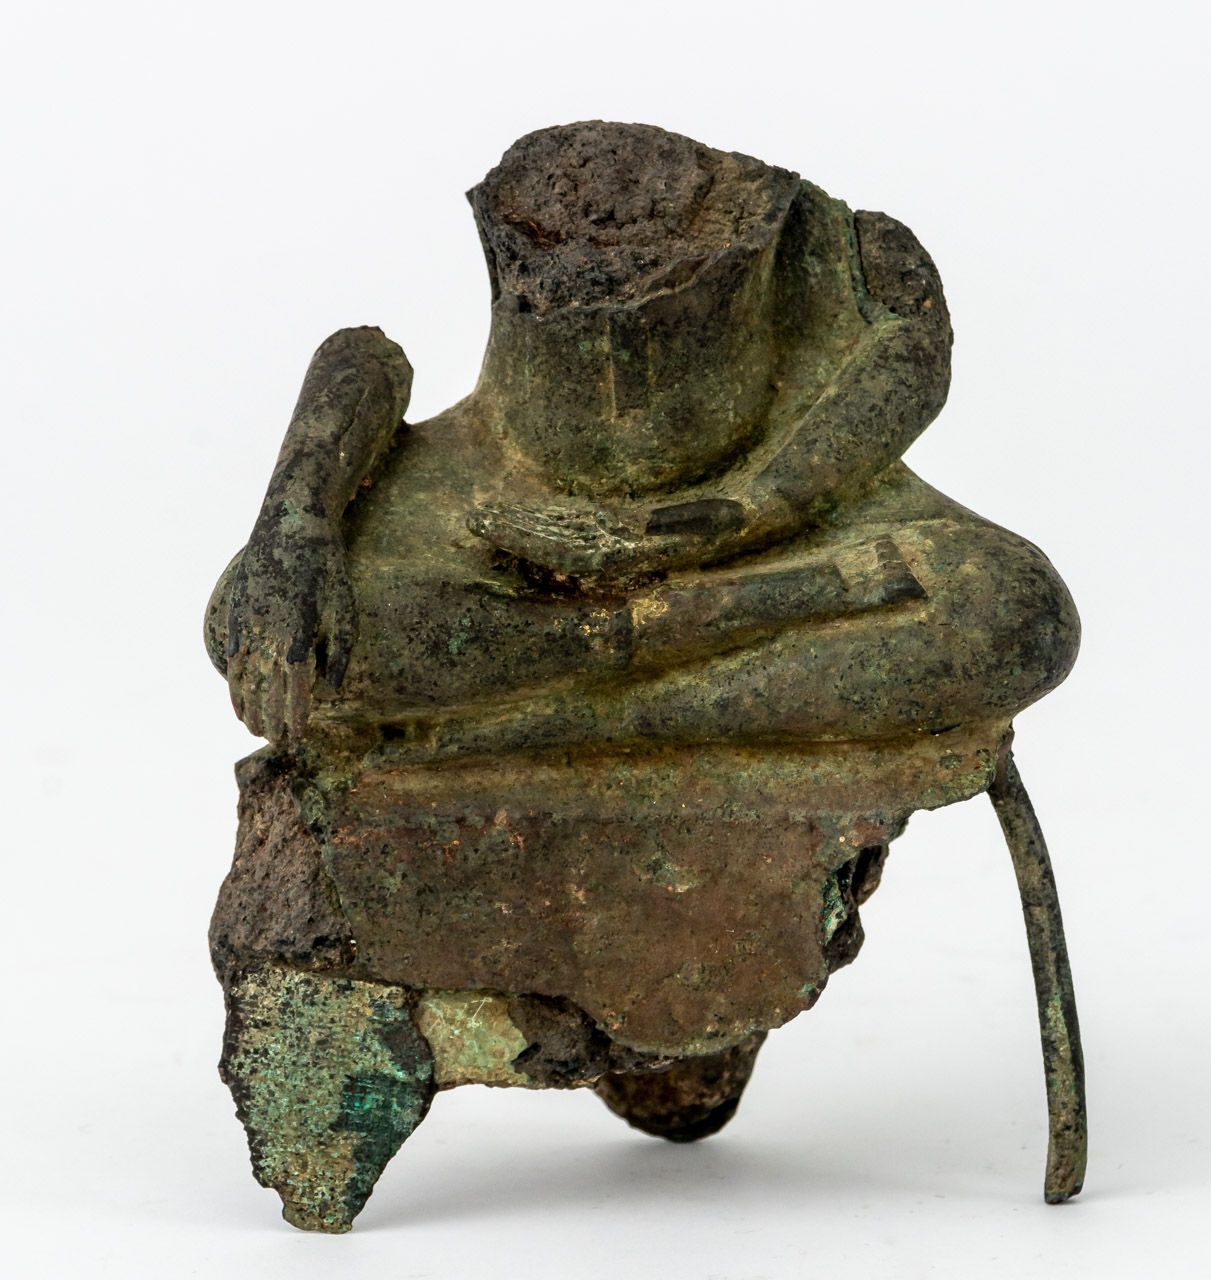 FRAGMENT EINES BUDDHA Bronze, 18e siècle ou plus ancien

13,2 cm de haut